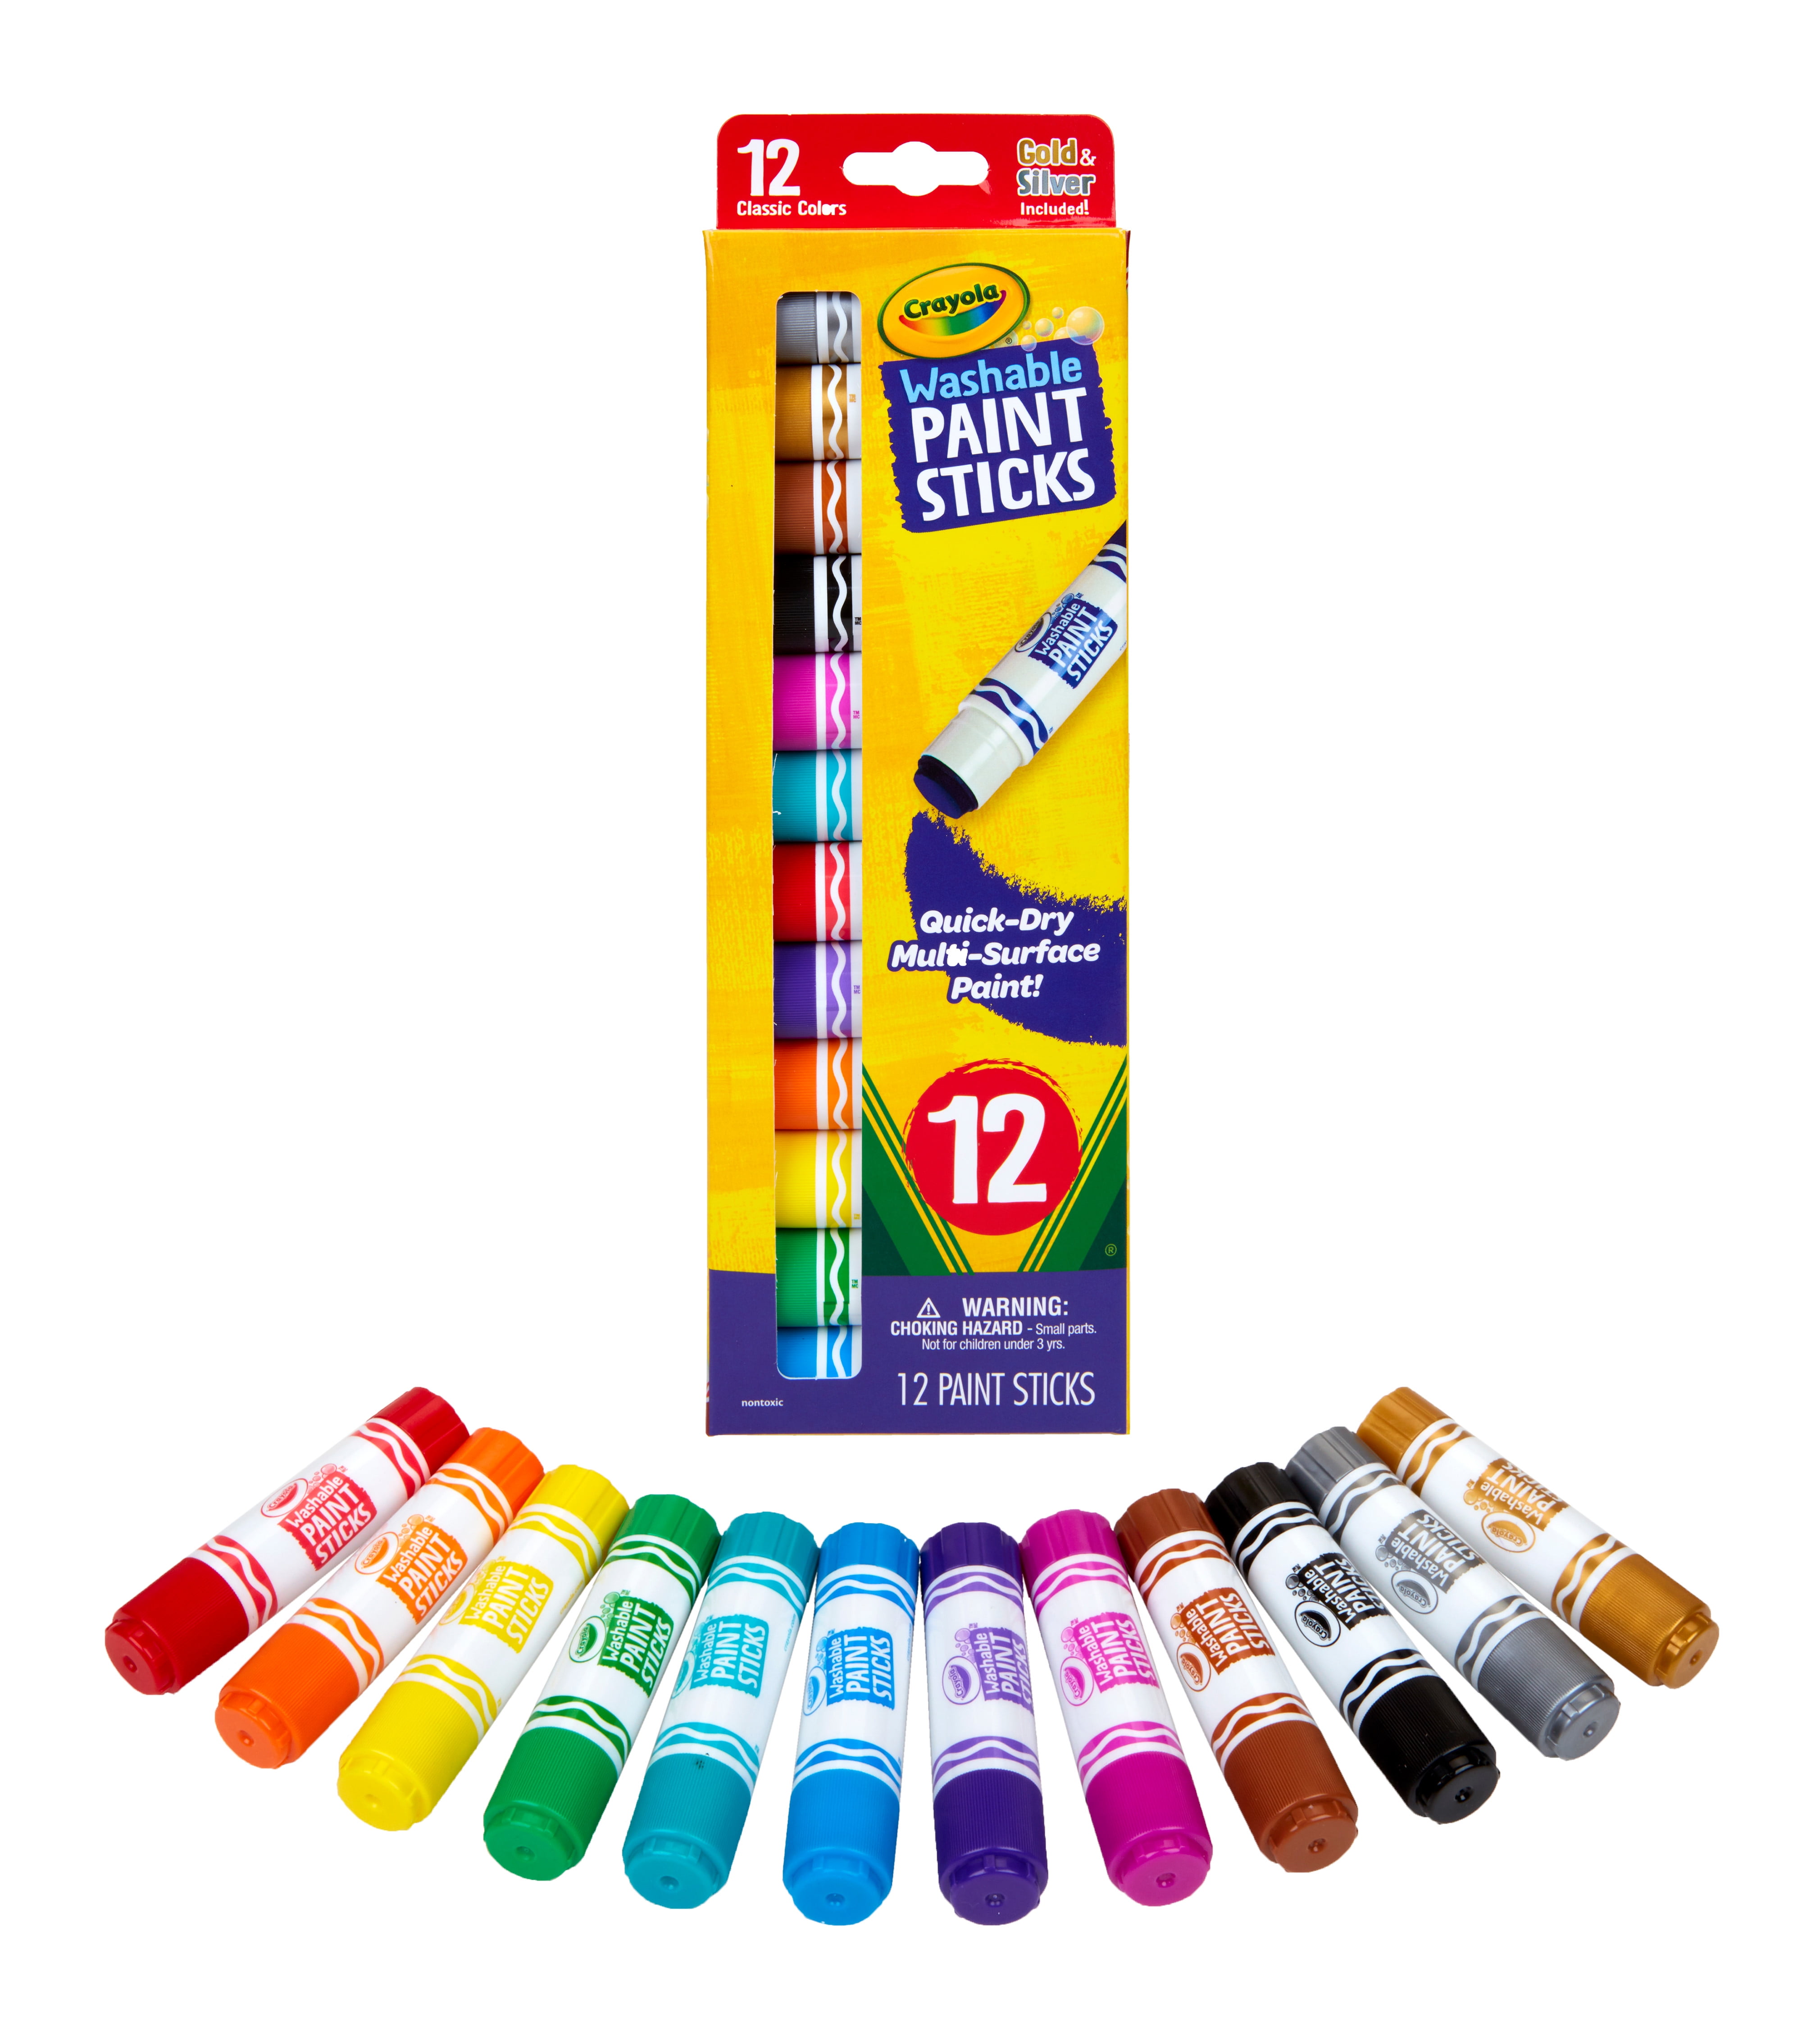 Crayola® Dry-Erase White Note Paper, 17.5 x 23.5 in - Kroger